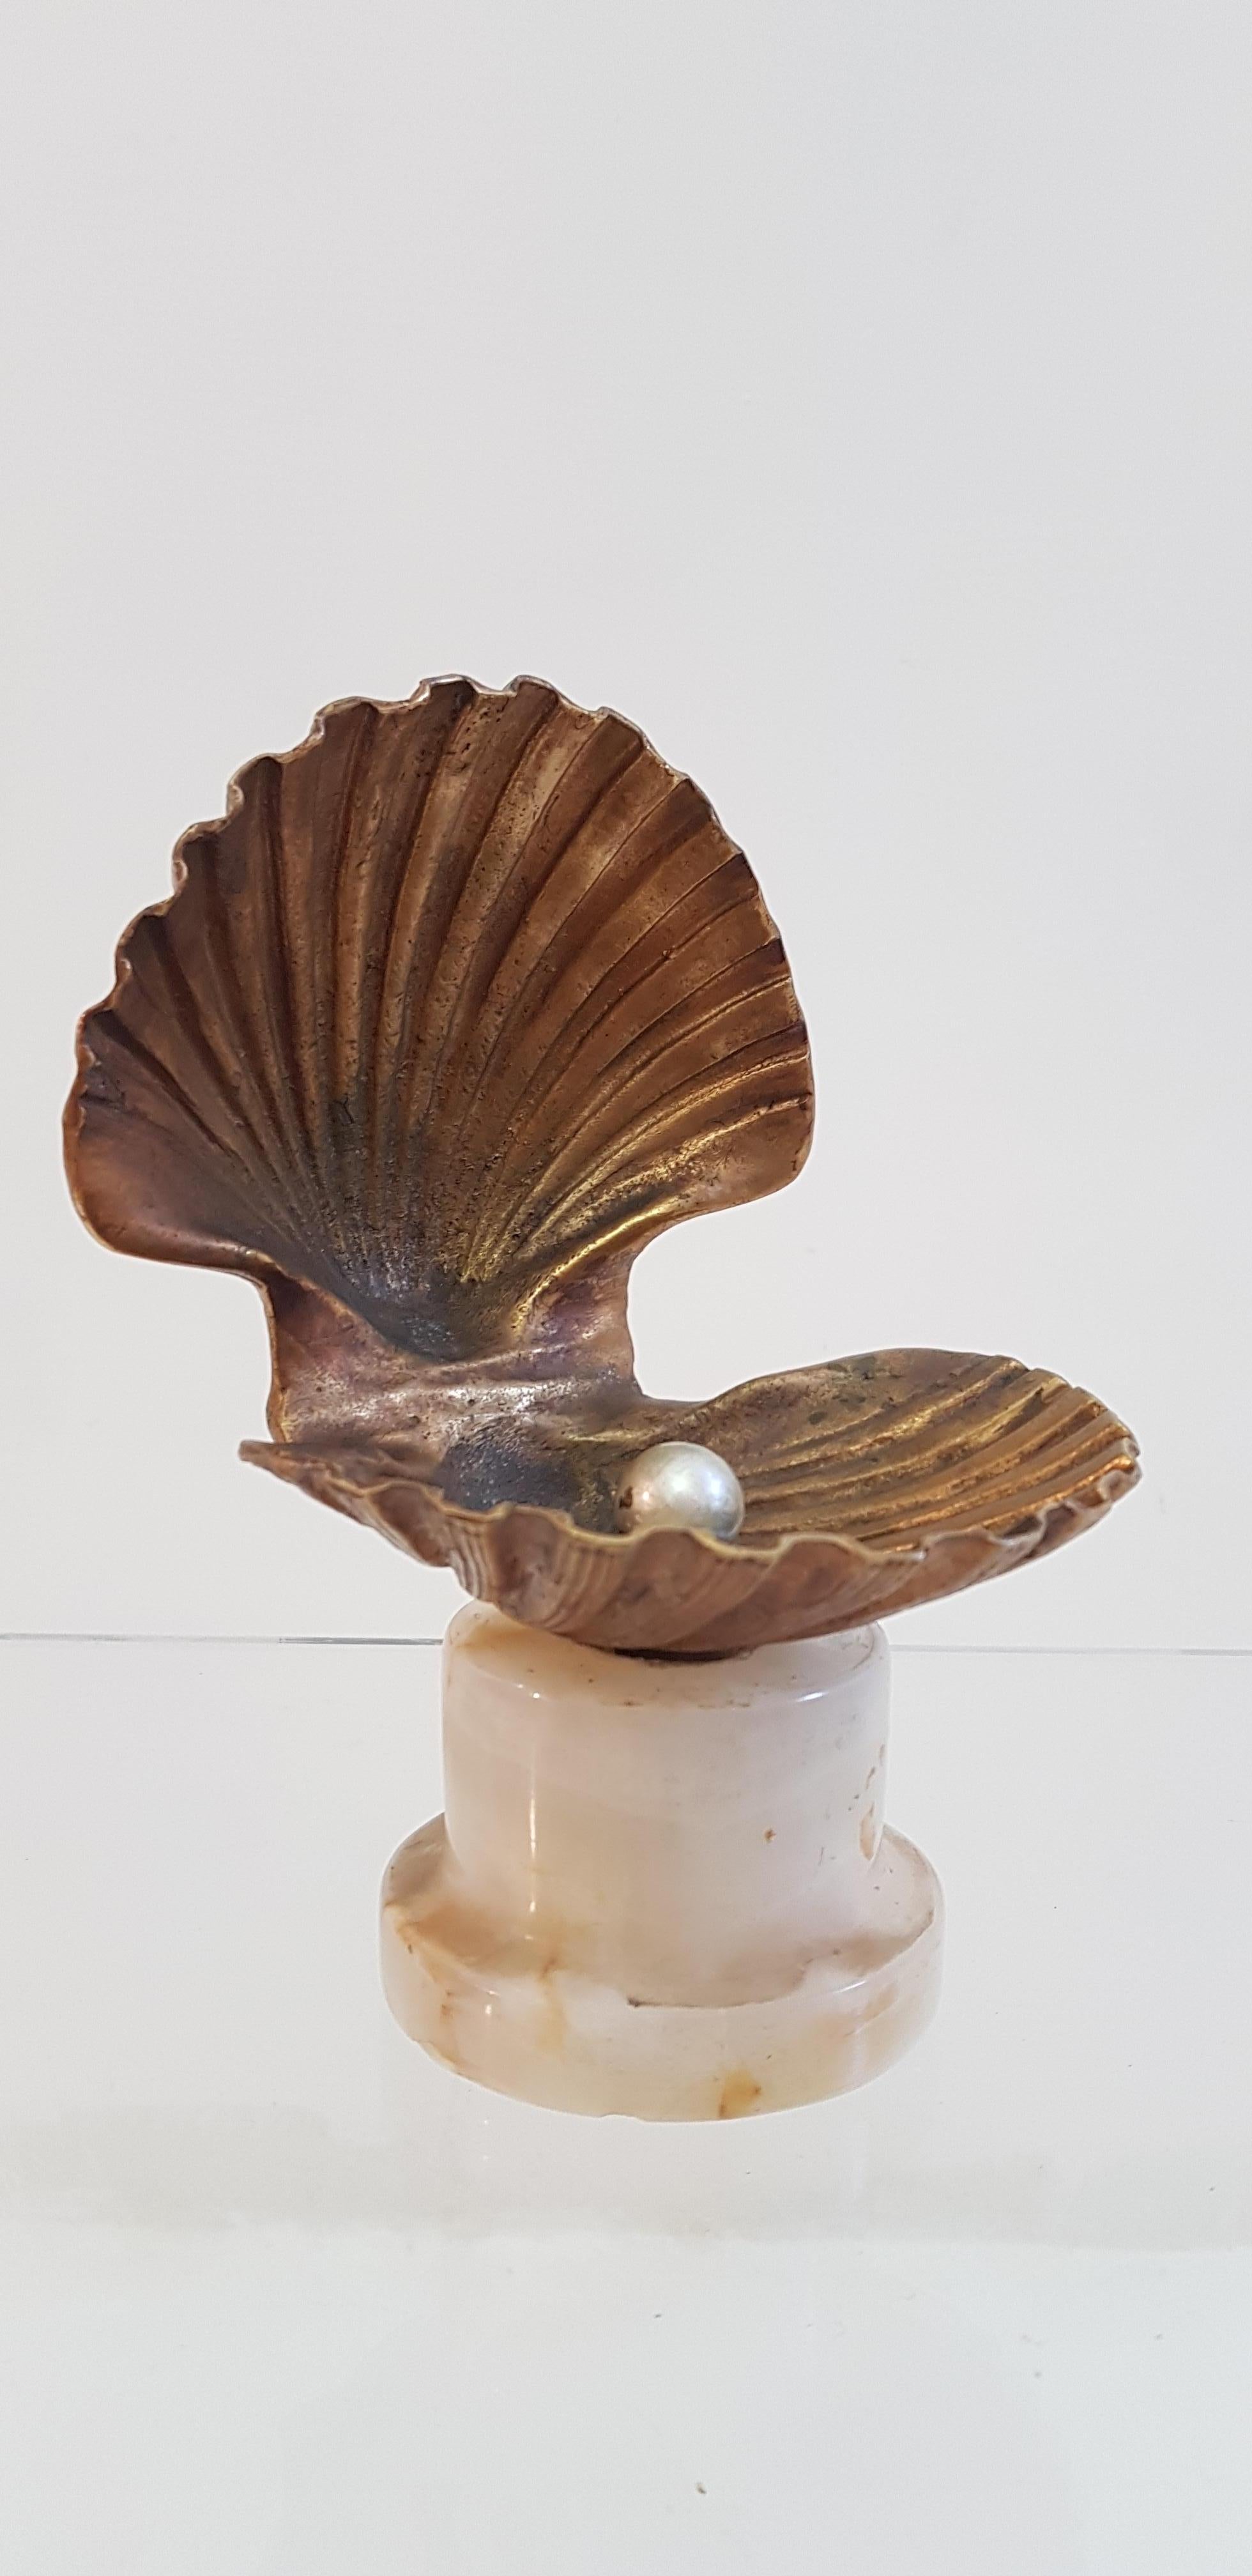 clam statue